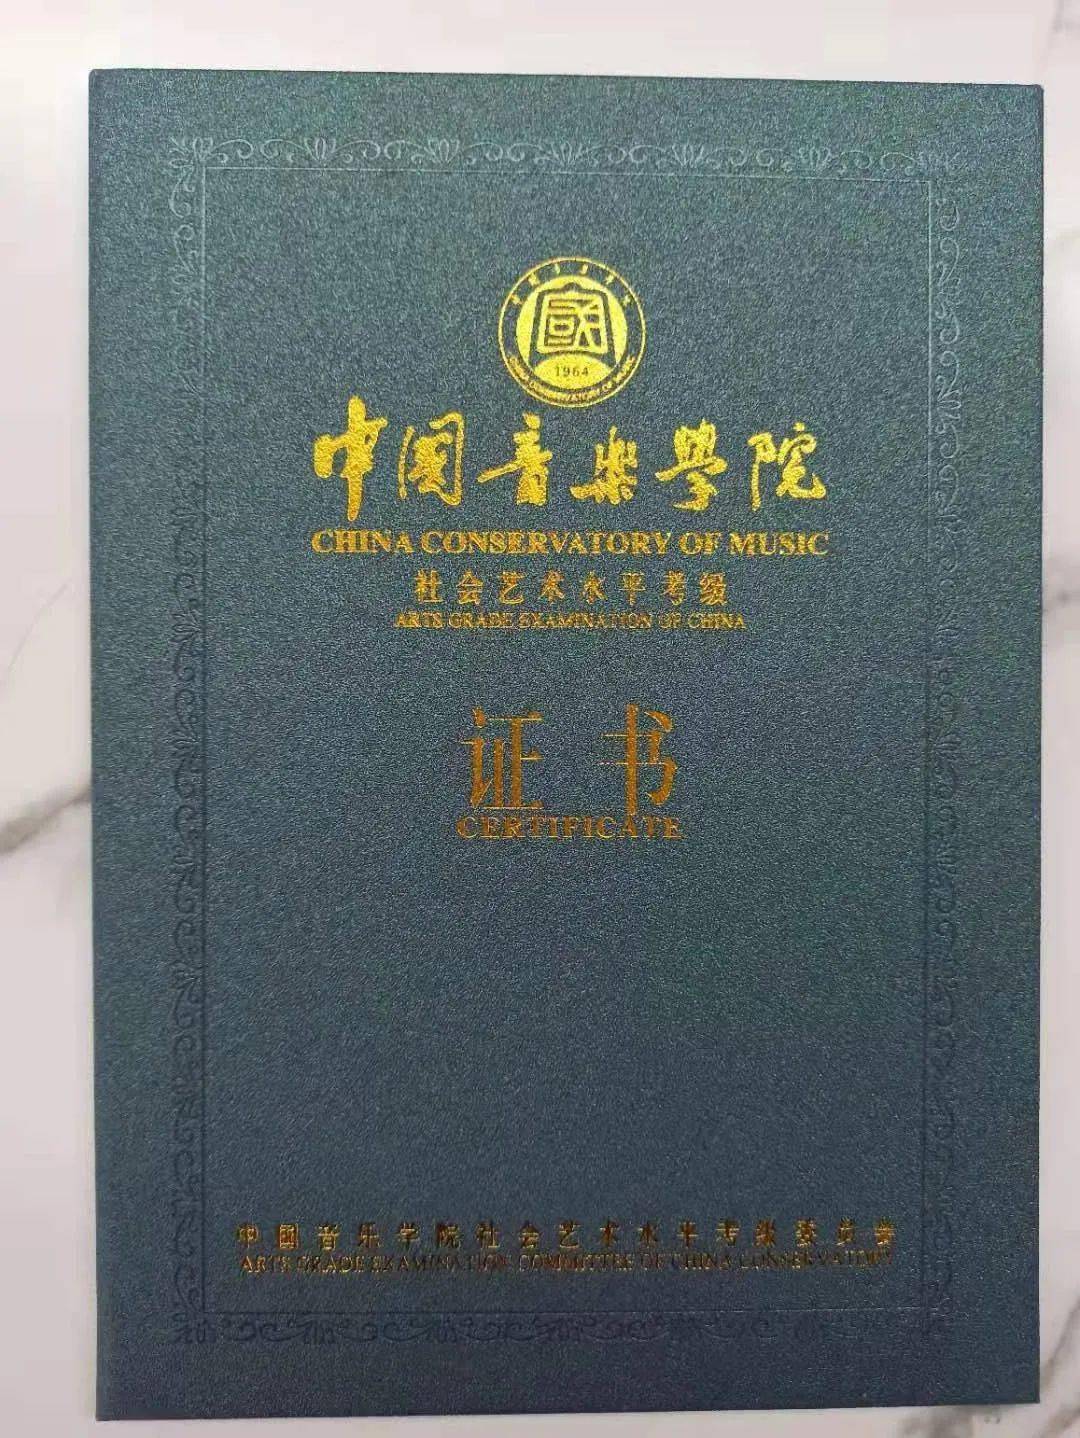 【同音*考级】领证啦!中国音乐学院夏季考级证书已经可以领取啦!